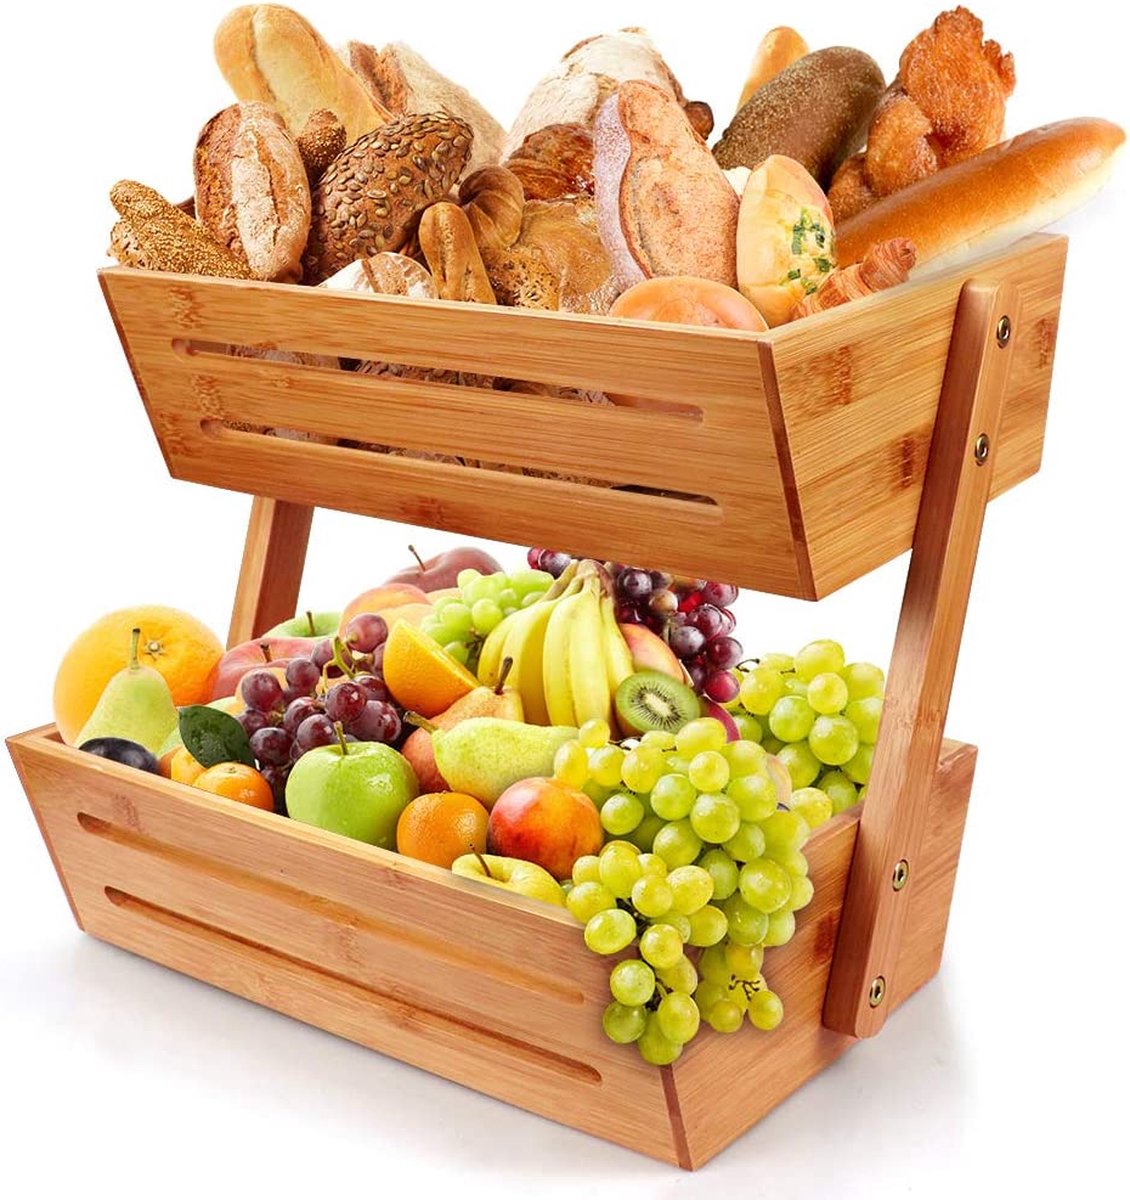 Hossejoy Fruitmand, Bamboe 2 Tier Serveermand Fruit Bowl & Snack Display Stand, Perfect voor fruit, groenten, snacks, huishoudelijke artikelen en meer